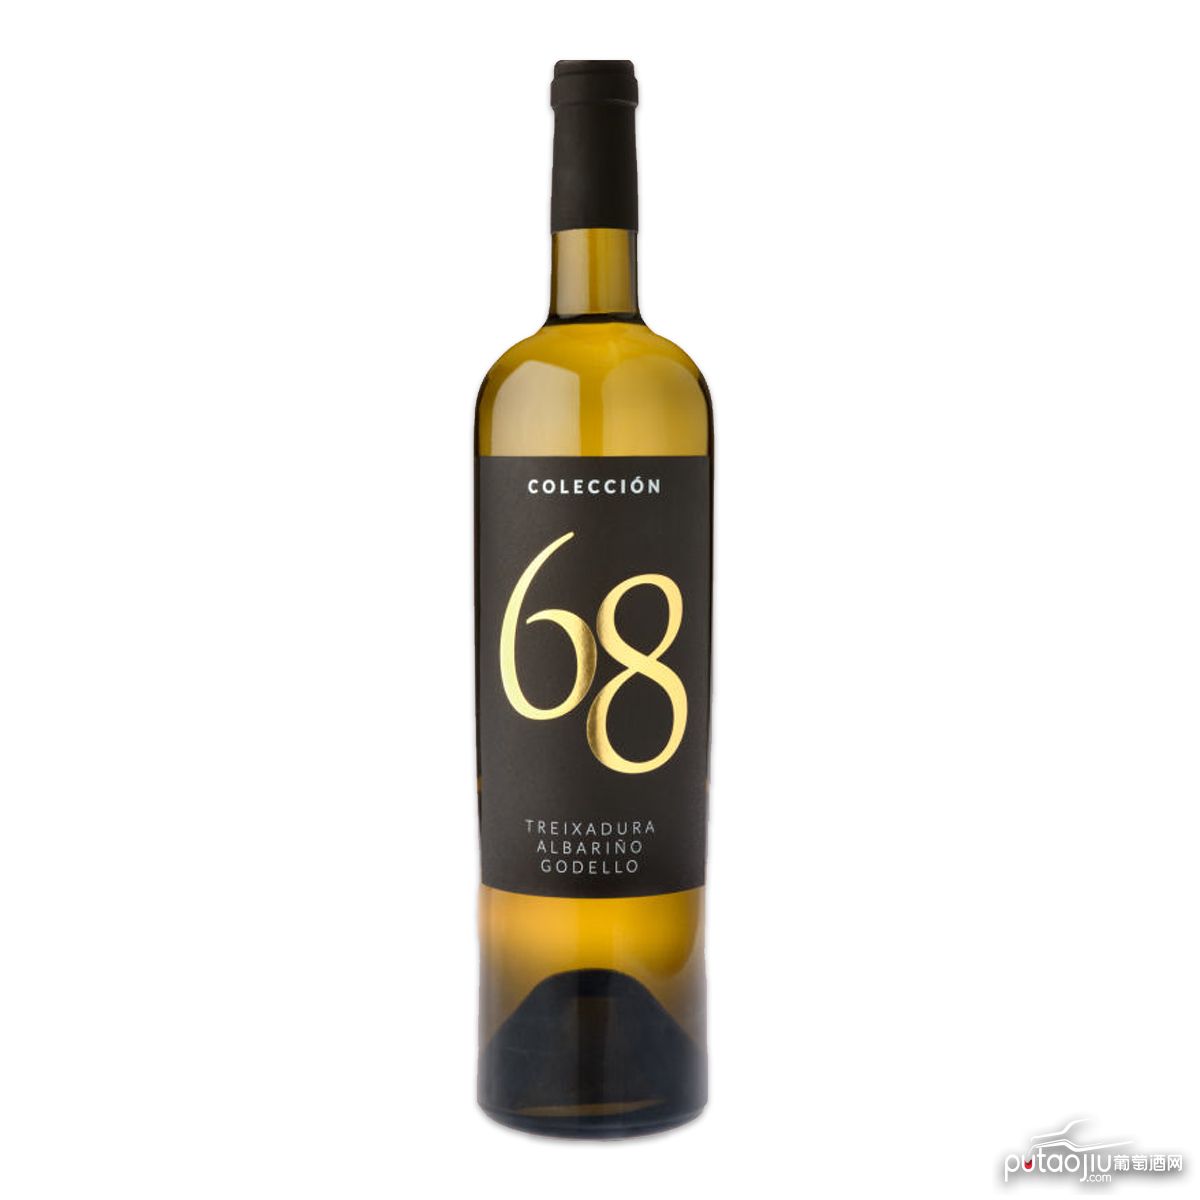 Colección 68 2019, White Wine, DO Ribeiro 2019年份河岸产区 精选68 干白葡萄酒